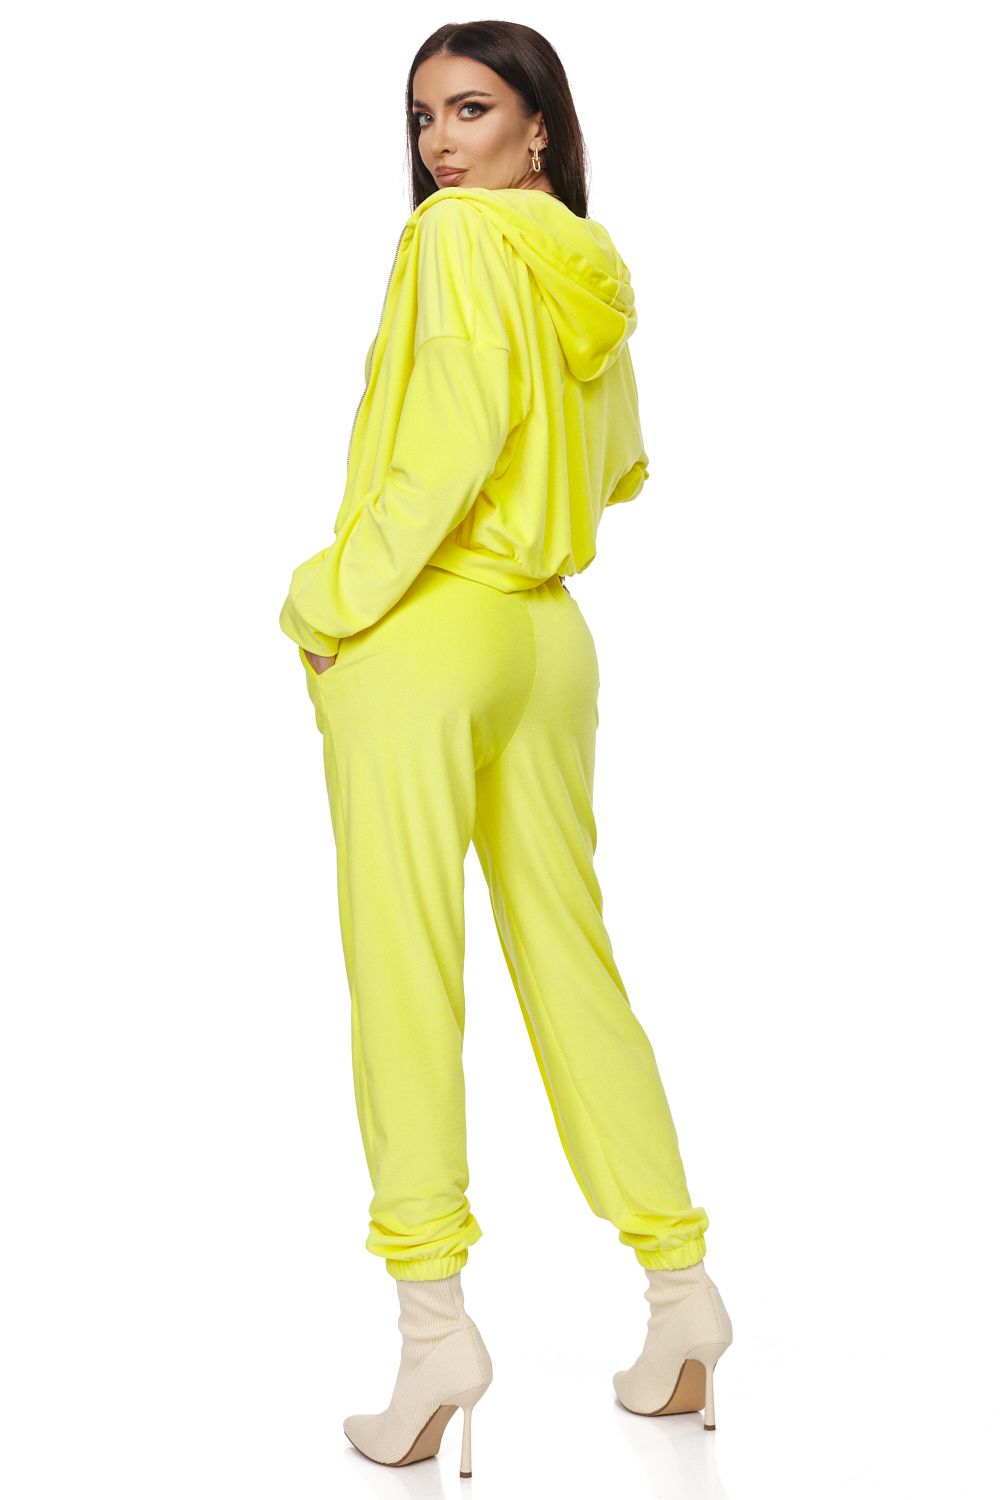 Дамски спортен костюм Melos Bogas в жълт цвят